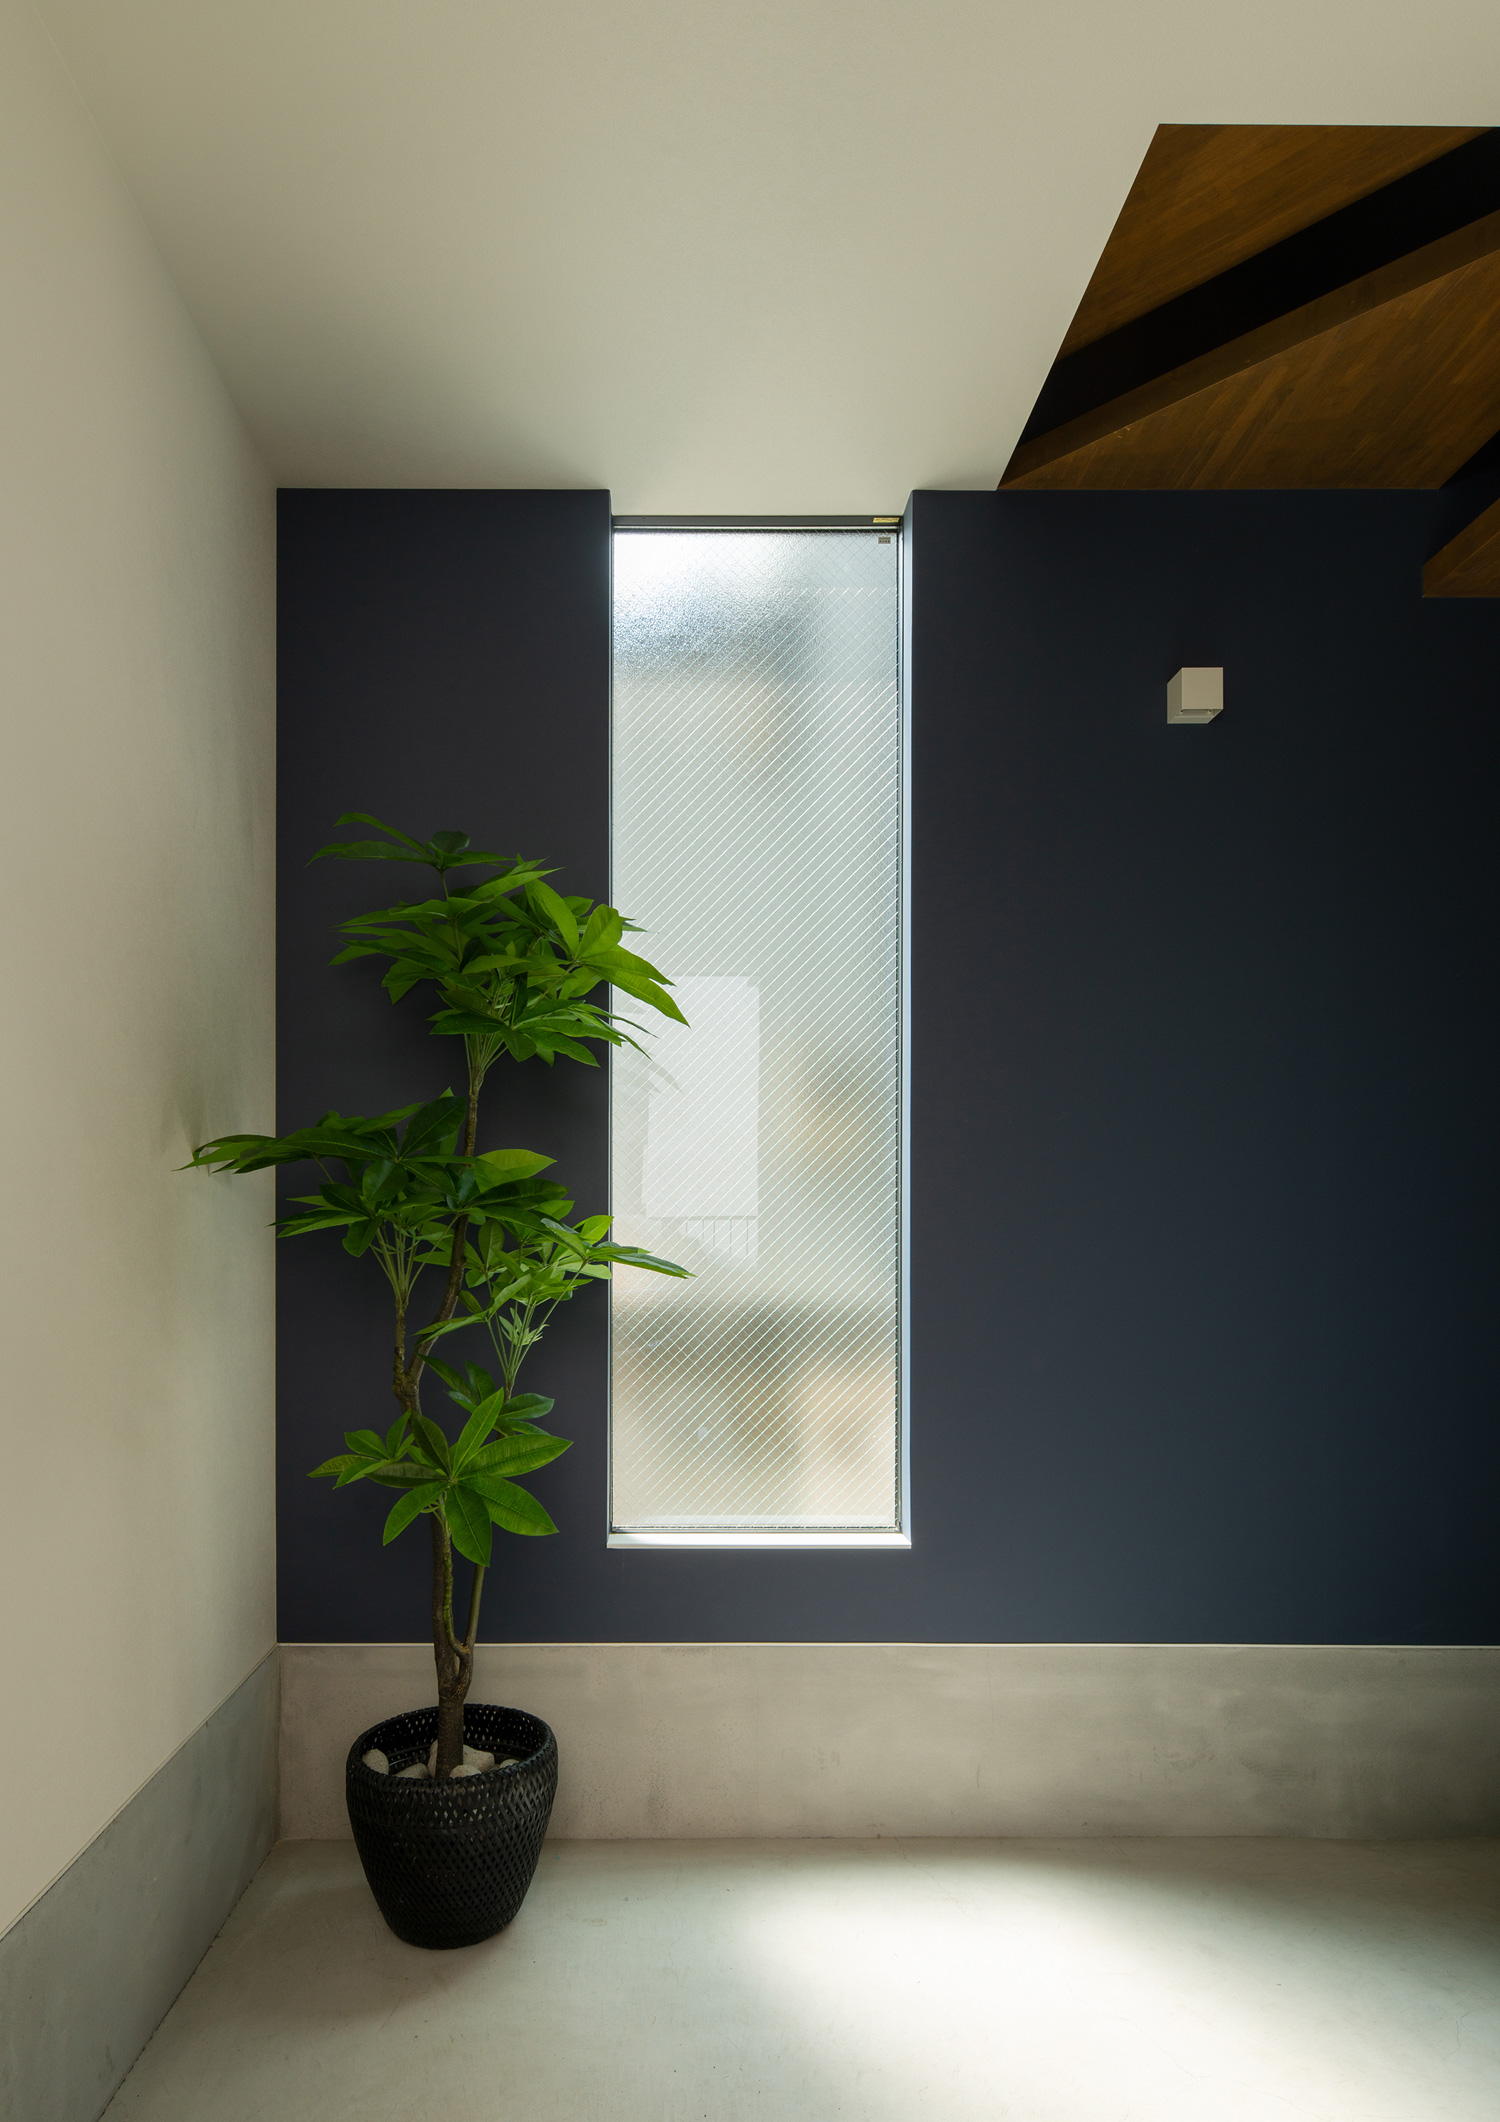 縦長の窓があり、観葉植物が飾られている土間の玄関・デザイン住宅